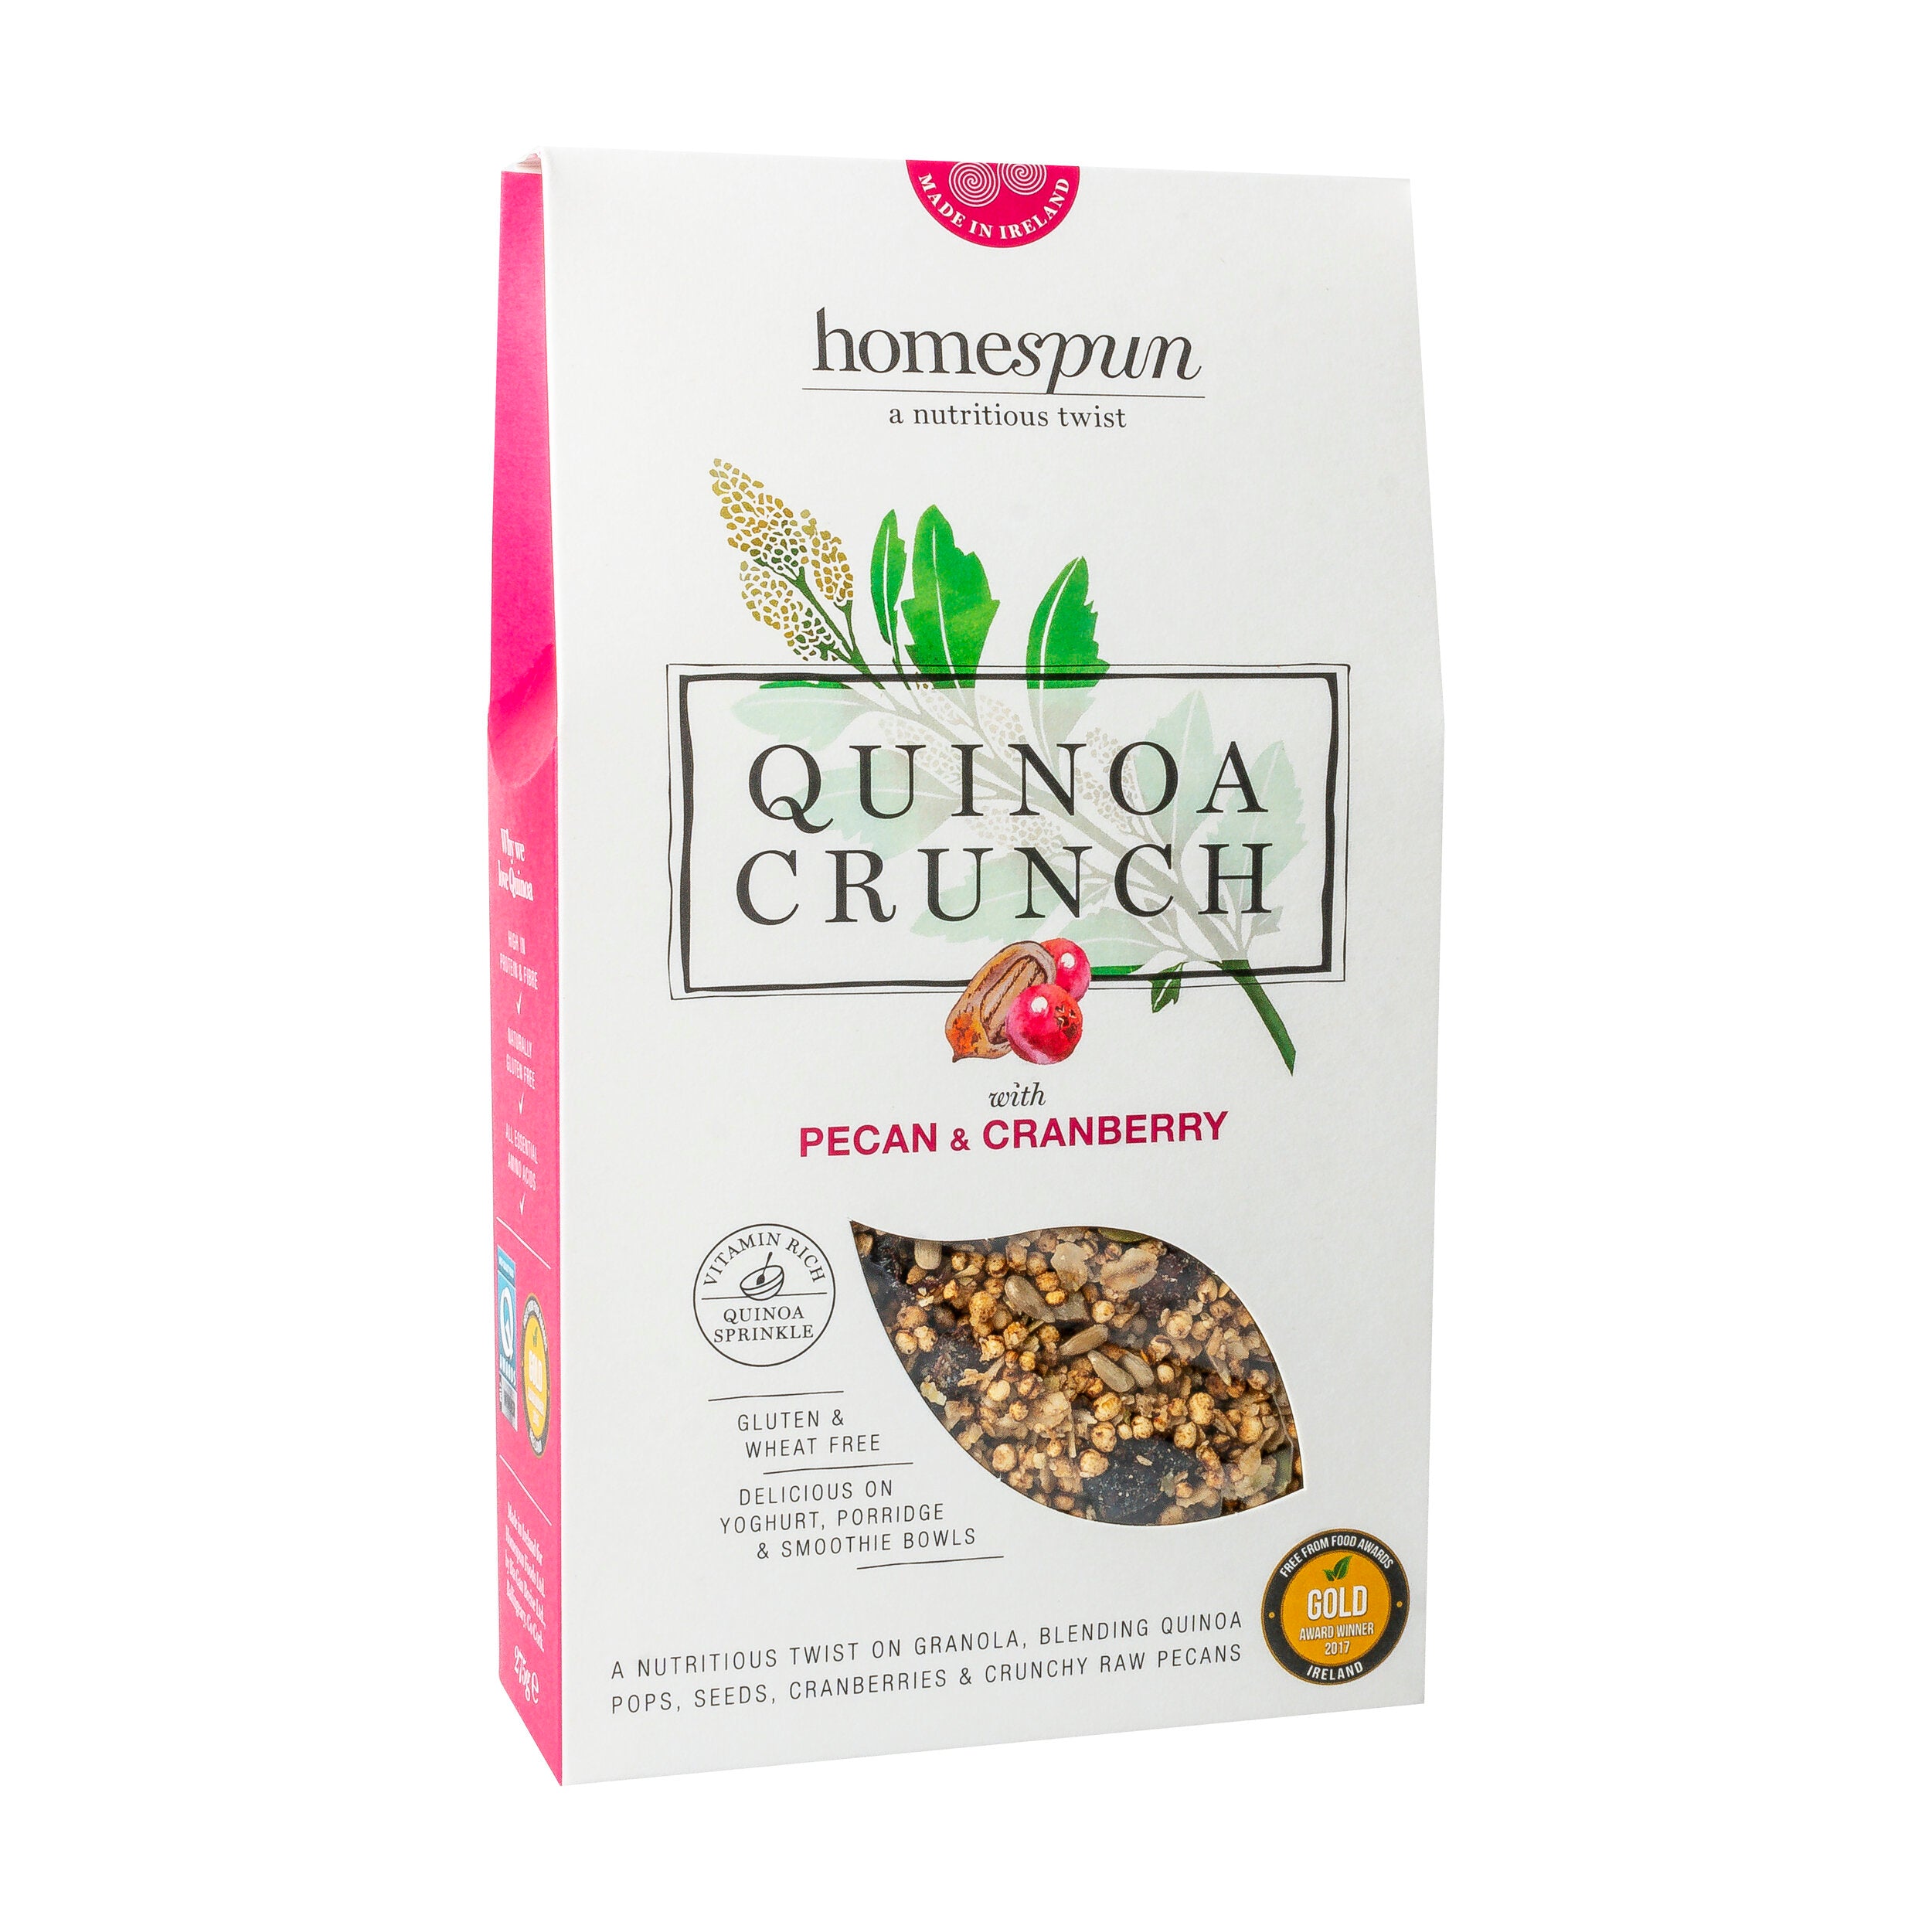 Homespun Quinoa Crunch with Pecan & Cranberry 275g Gluten Free